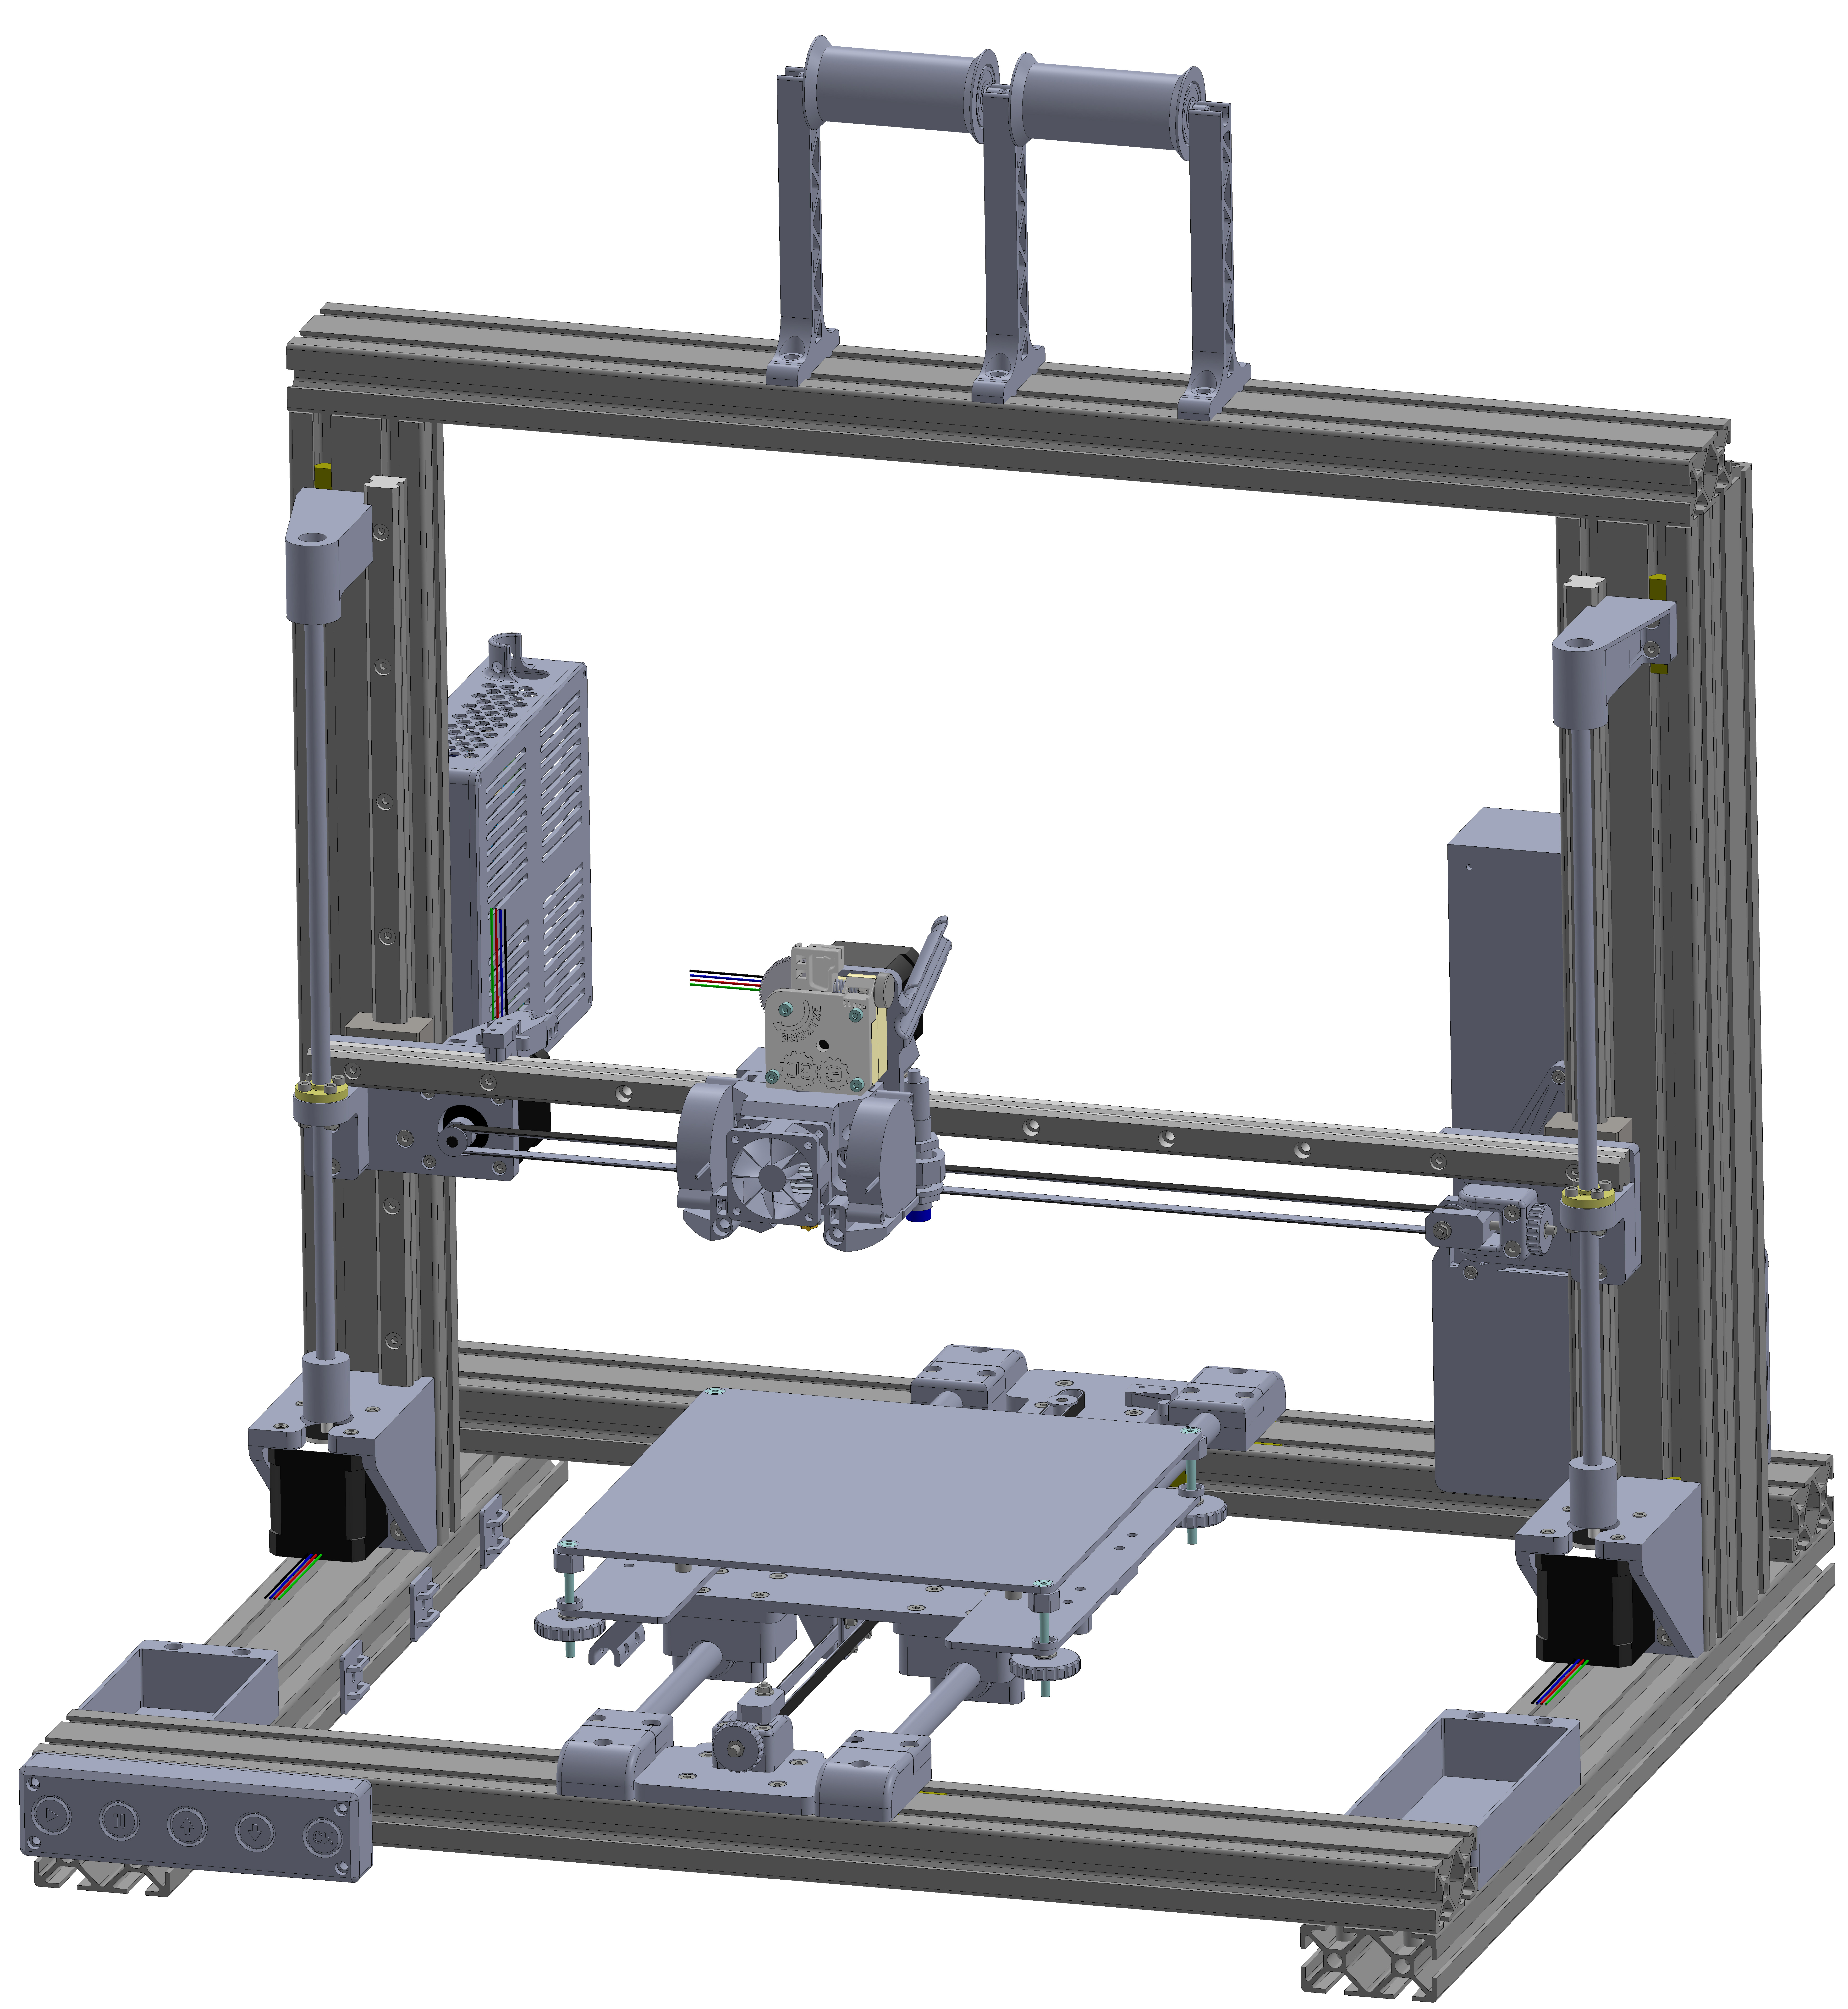 Cartesian 3D printer